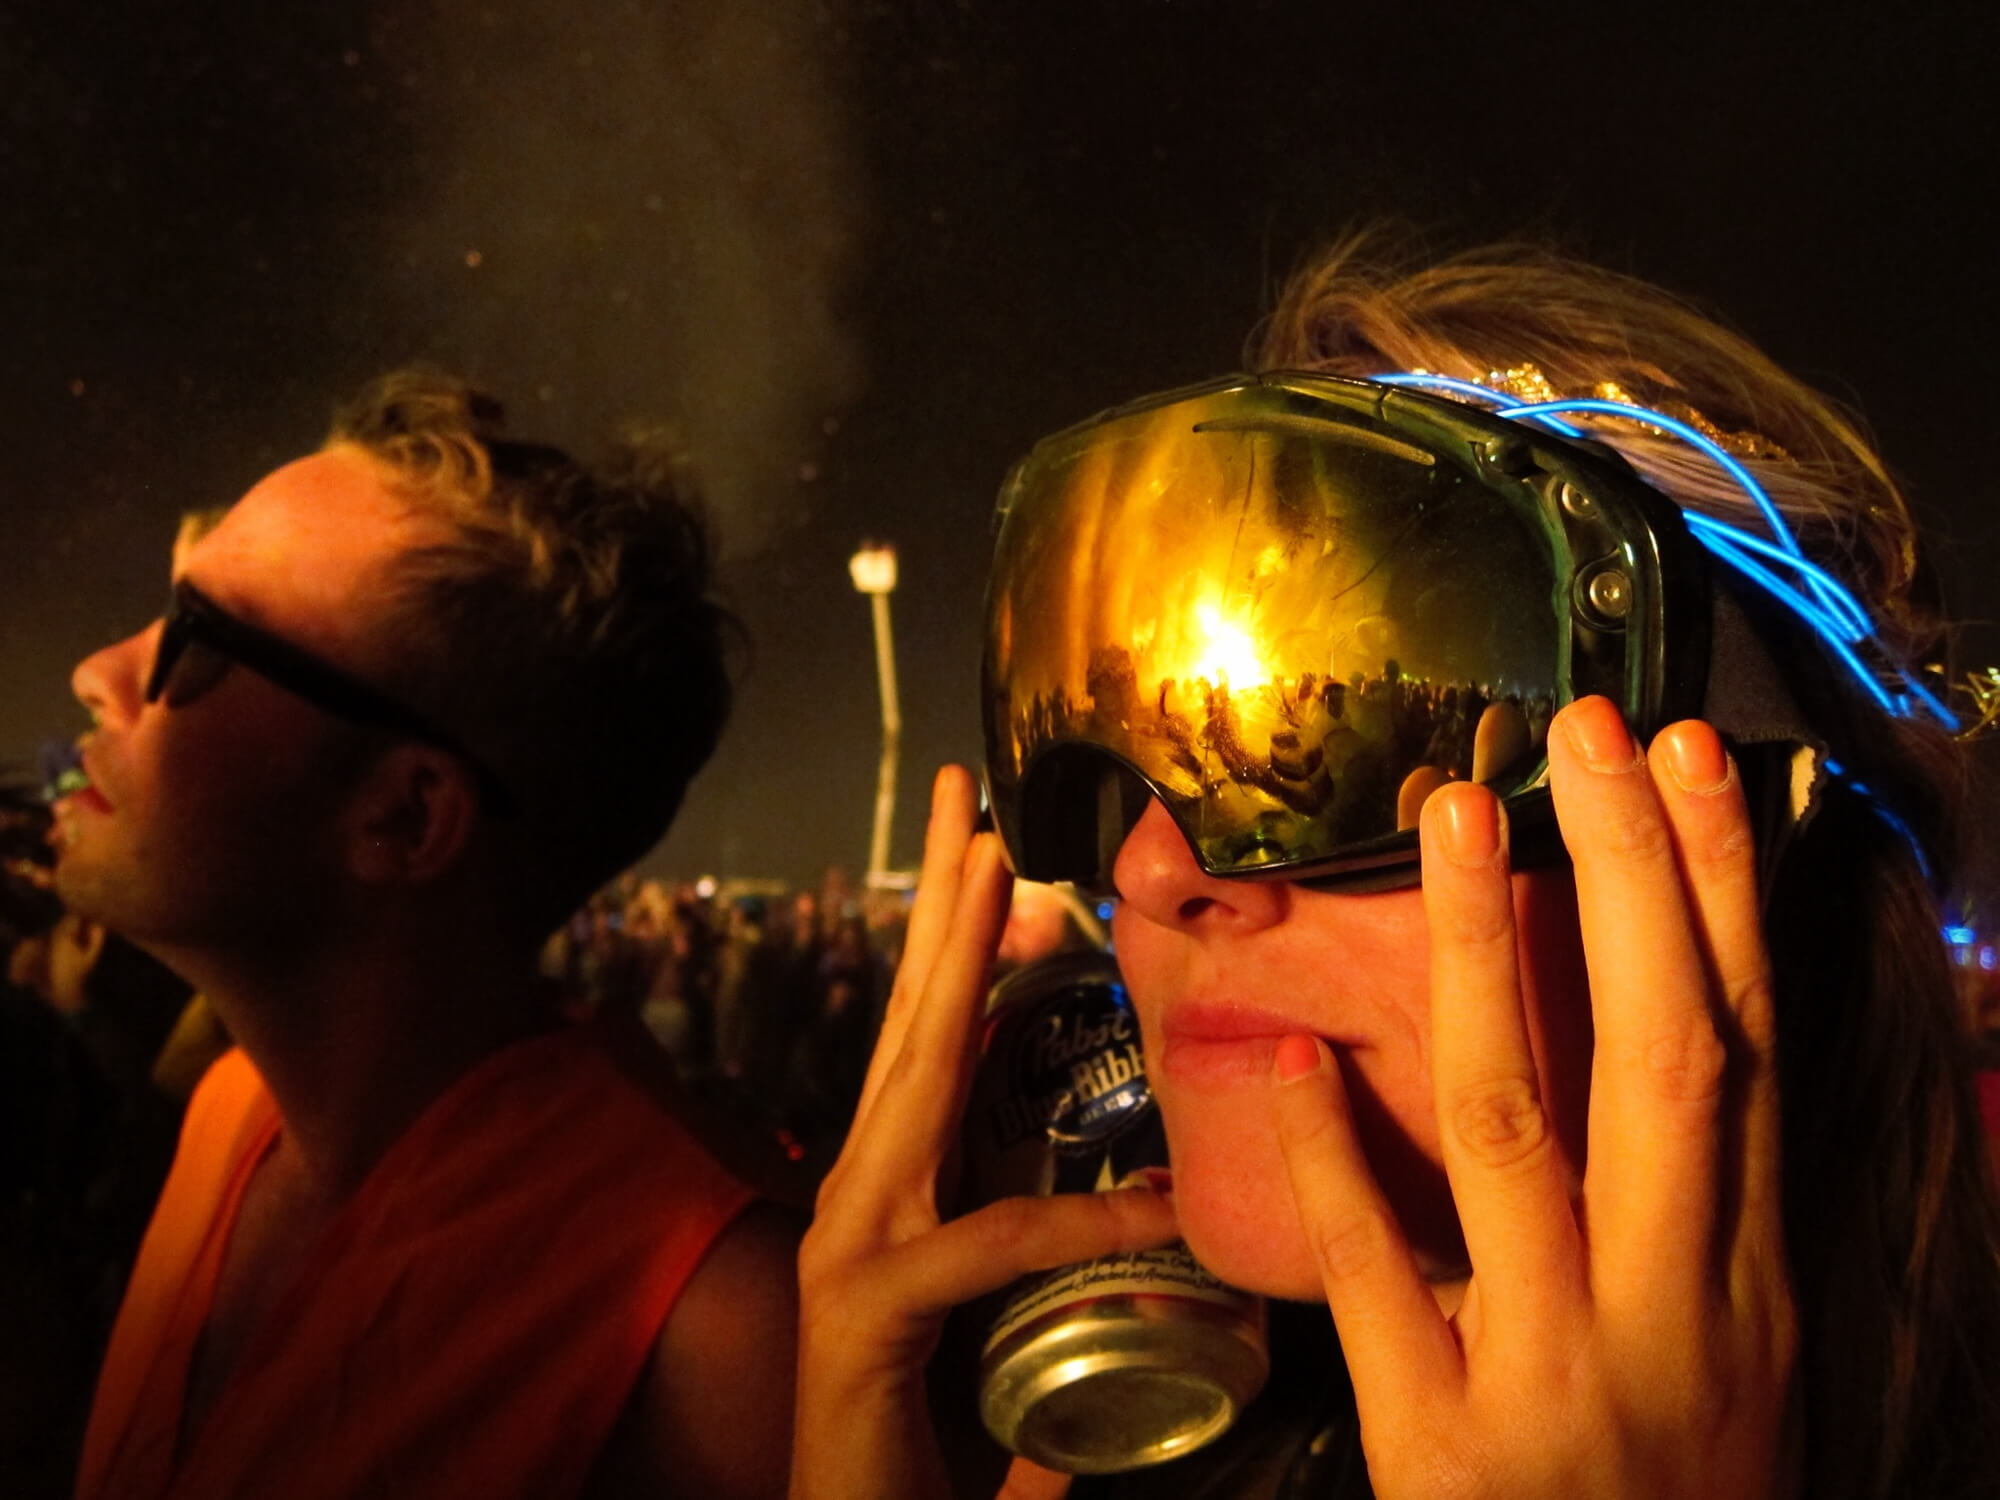 Nighttime at Burning Man